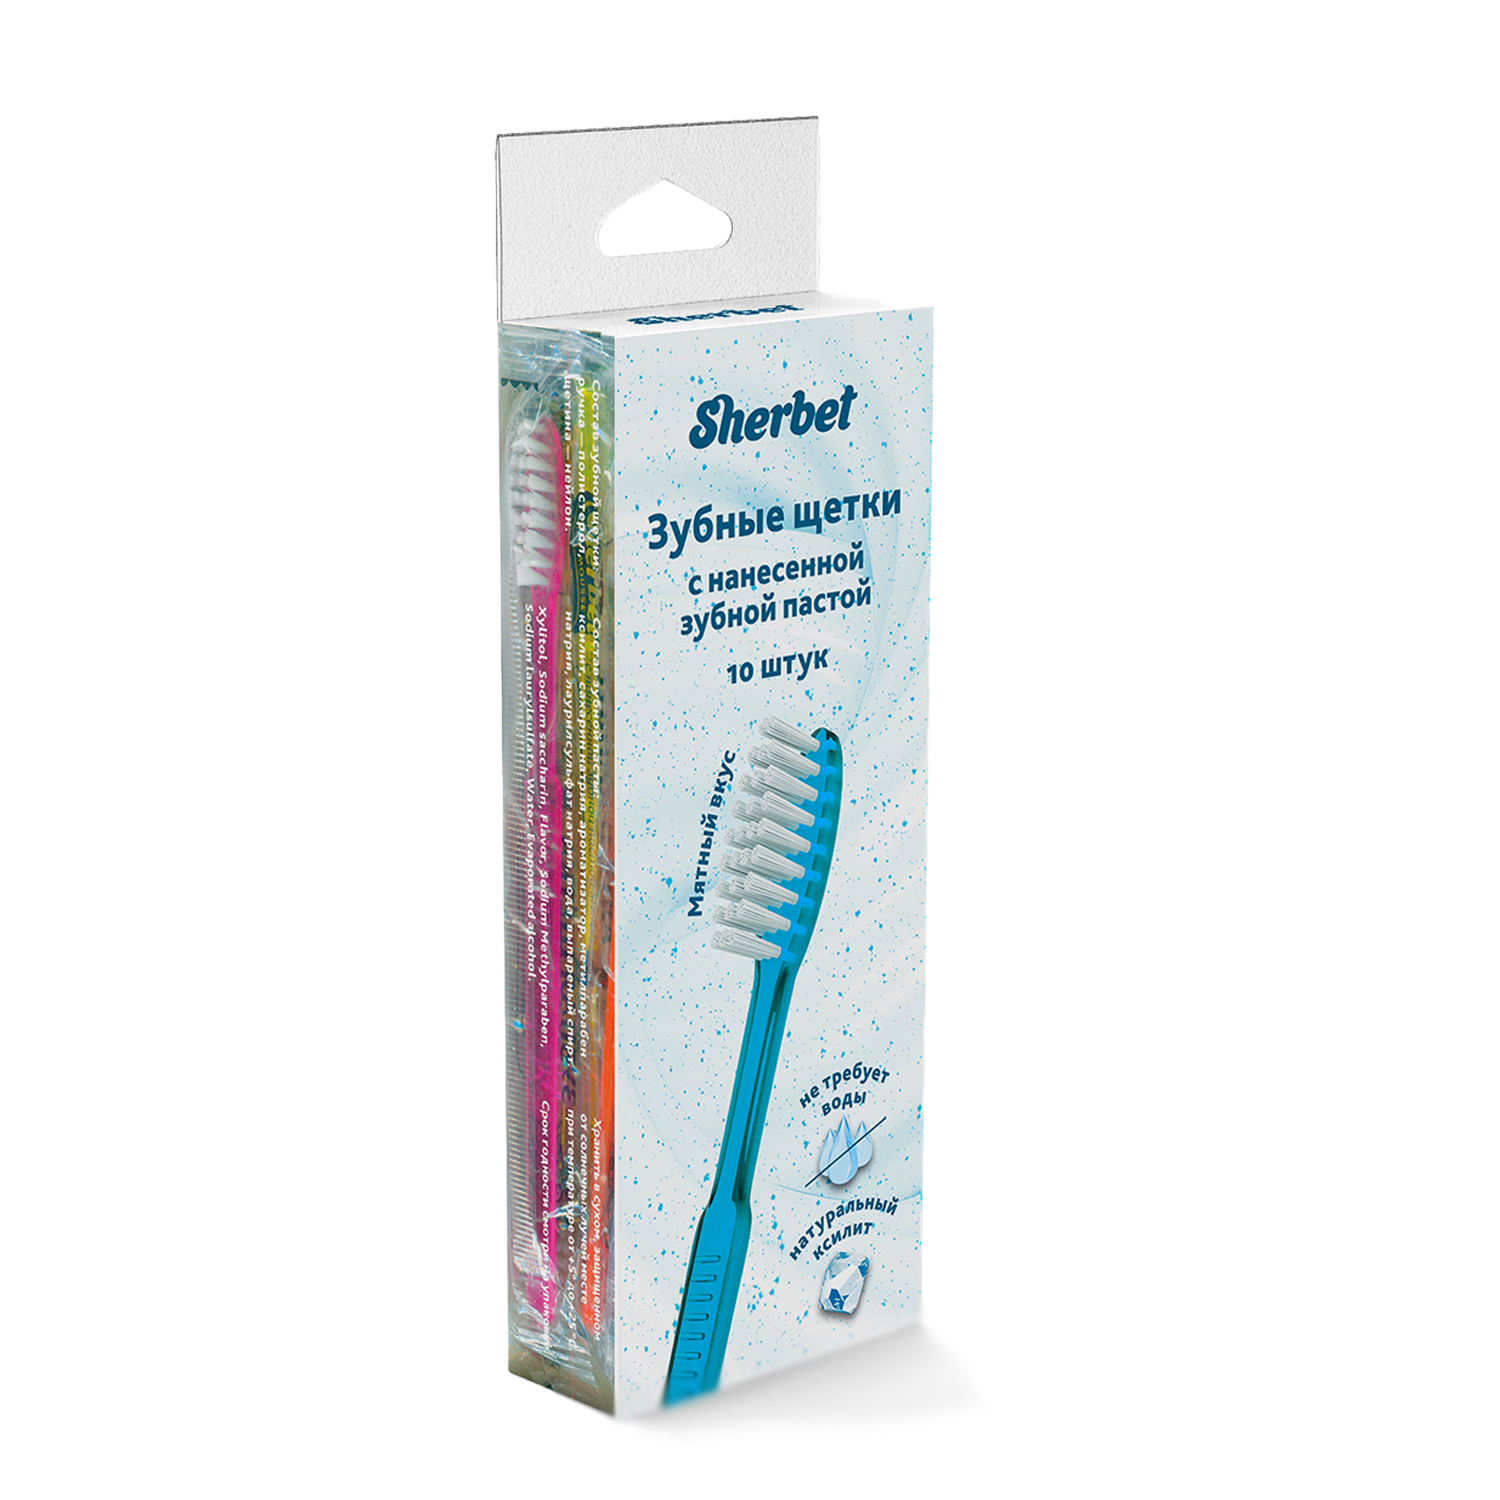 Зубная щетка Sherbet с нанесенной зубной пастой 10 шт. - фото 1